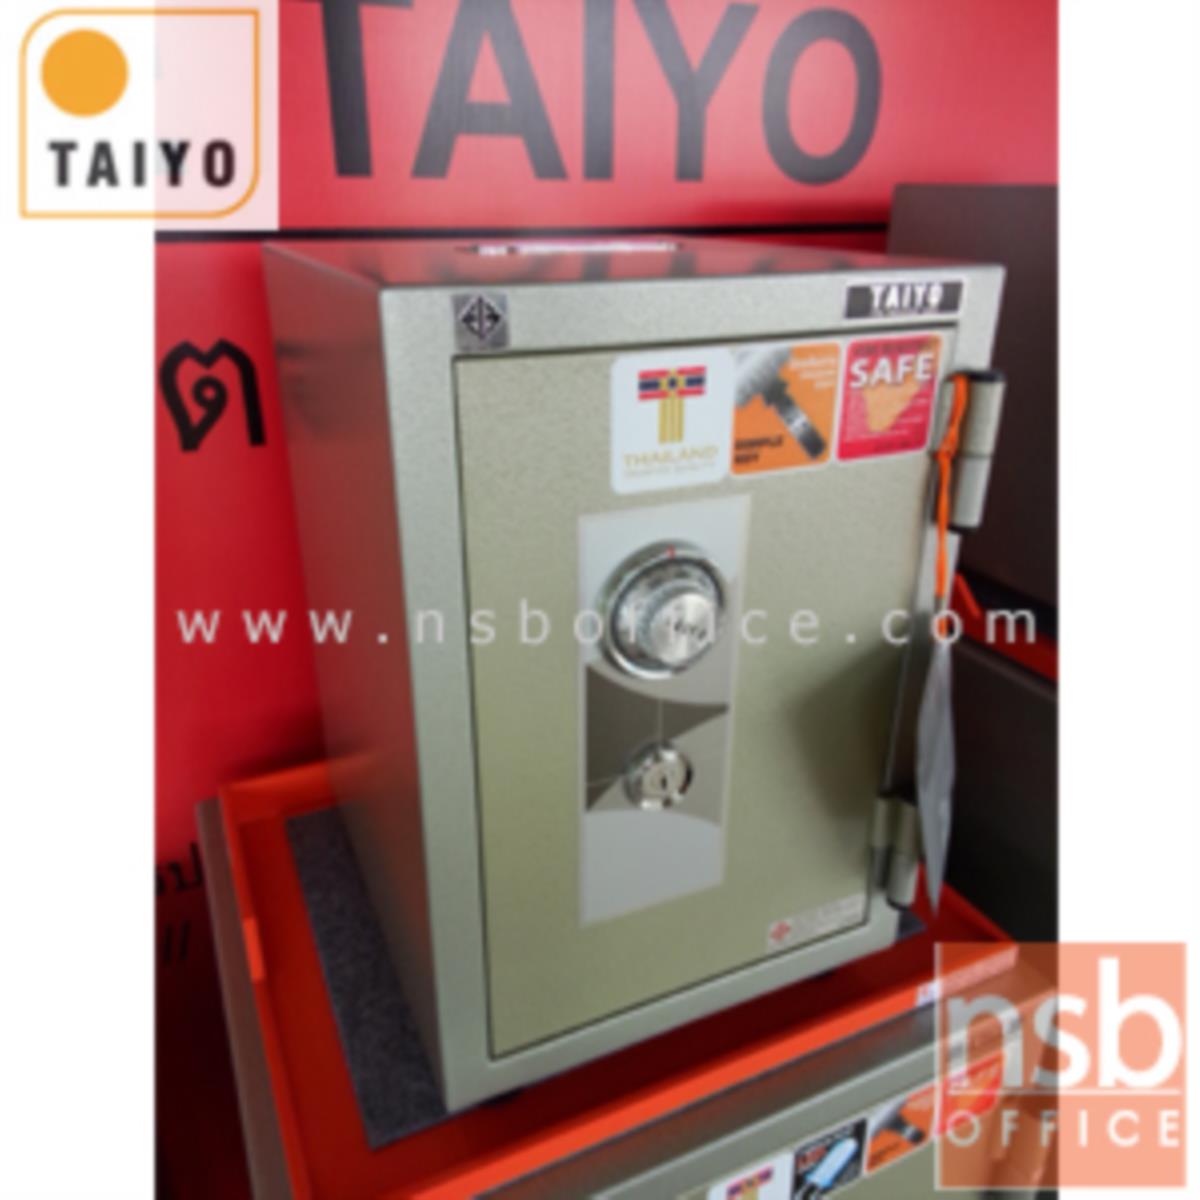 ตู้เซฟบริจาค TAIYO TS512K1C-05 มอก. 51 กก. 1 กุญแจ 1 รหัส (เจาะช่องรับบริจาค 10 cm ด้านบน)   